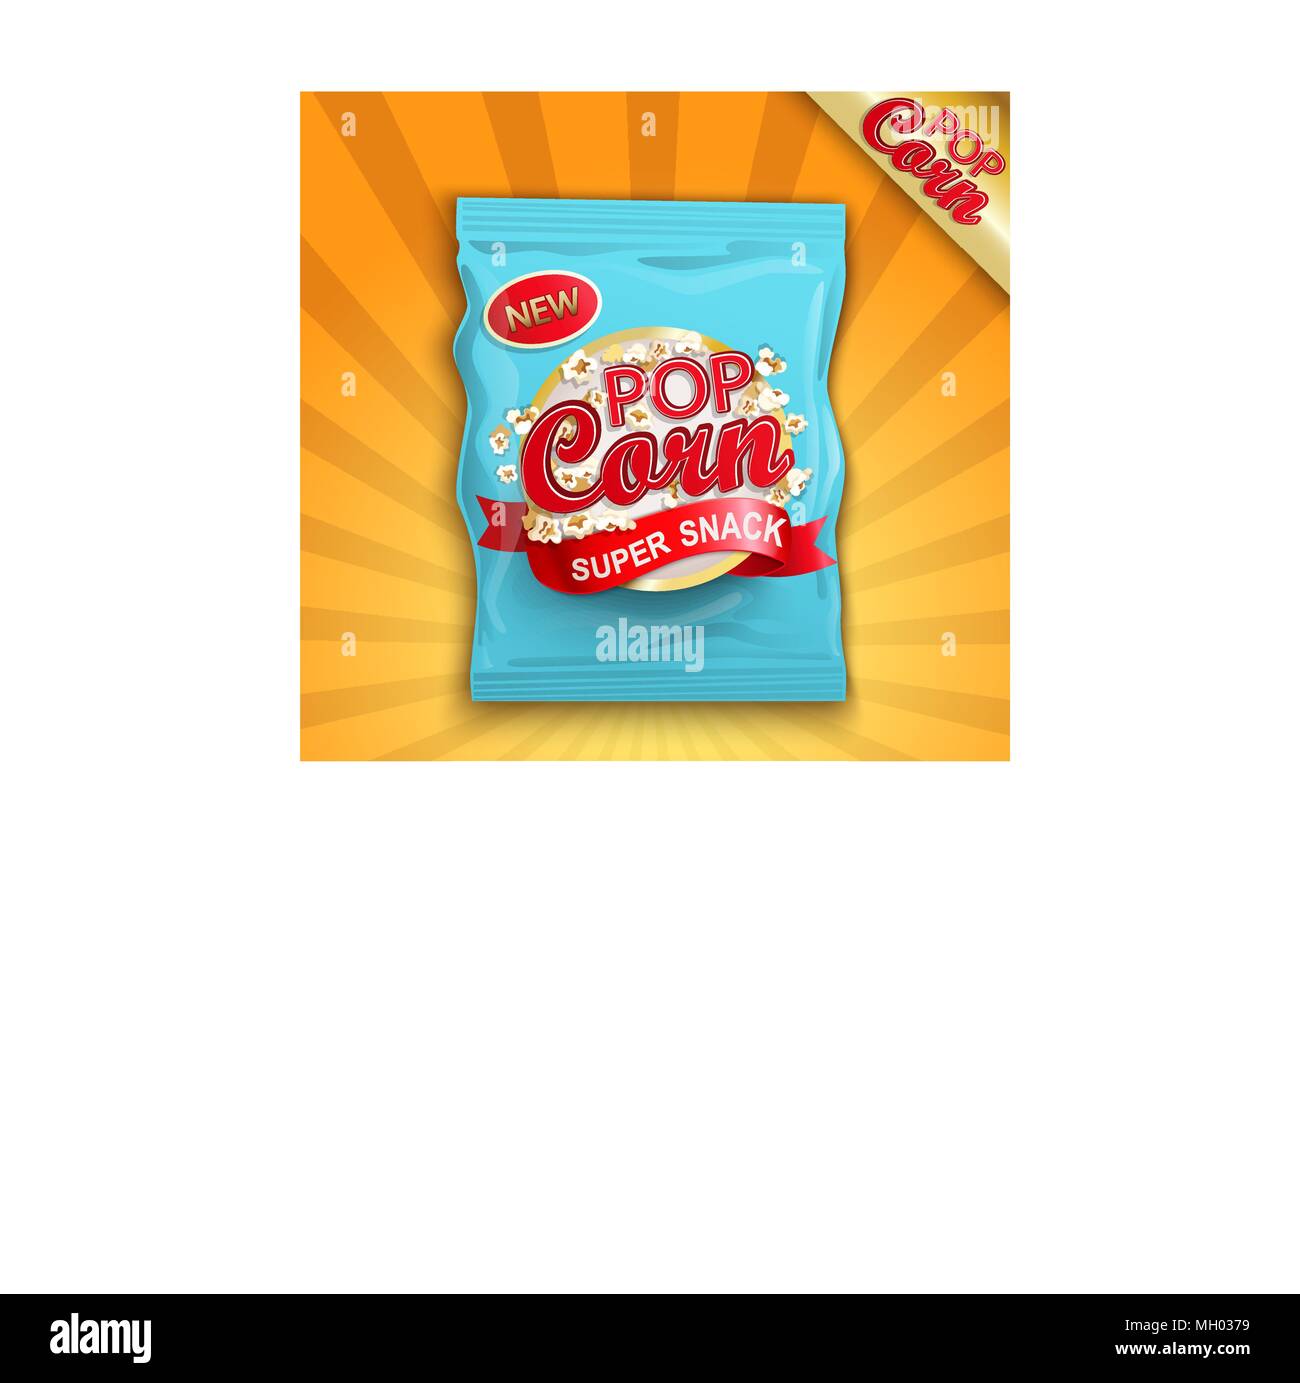 L'emballage avec l'étiquette de super snack - popcorn. Vectot illustration. Illustration de Vecteur